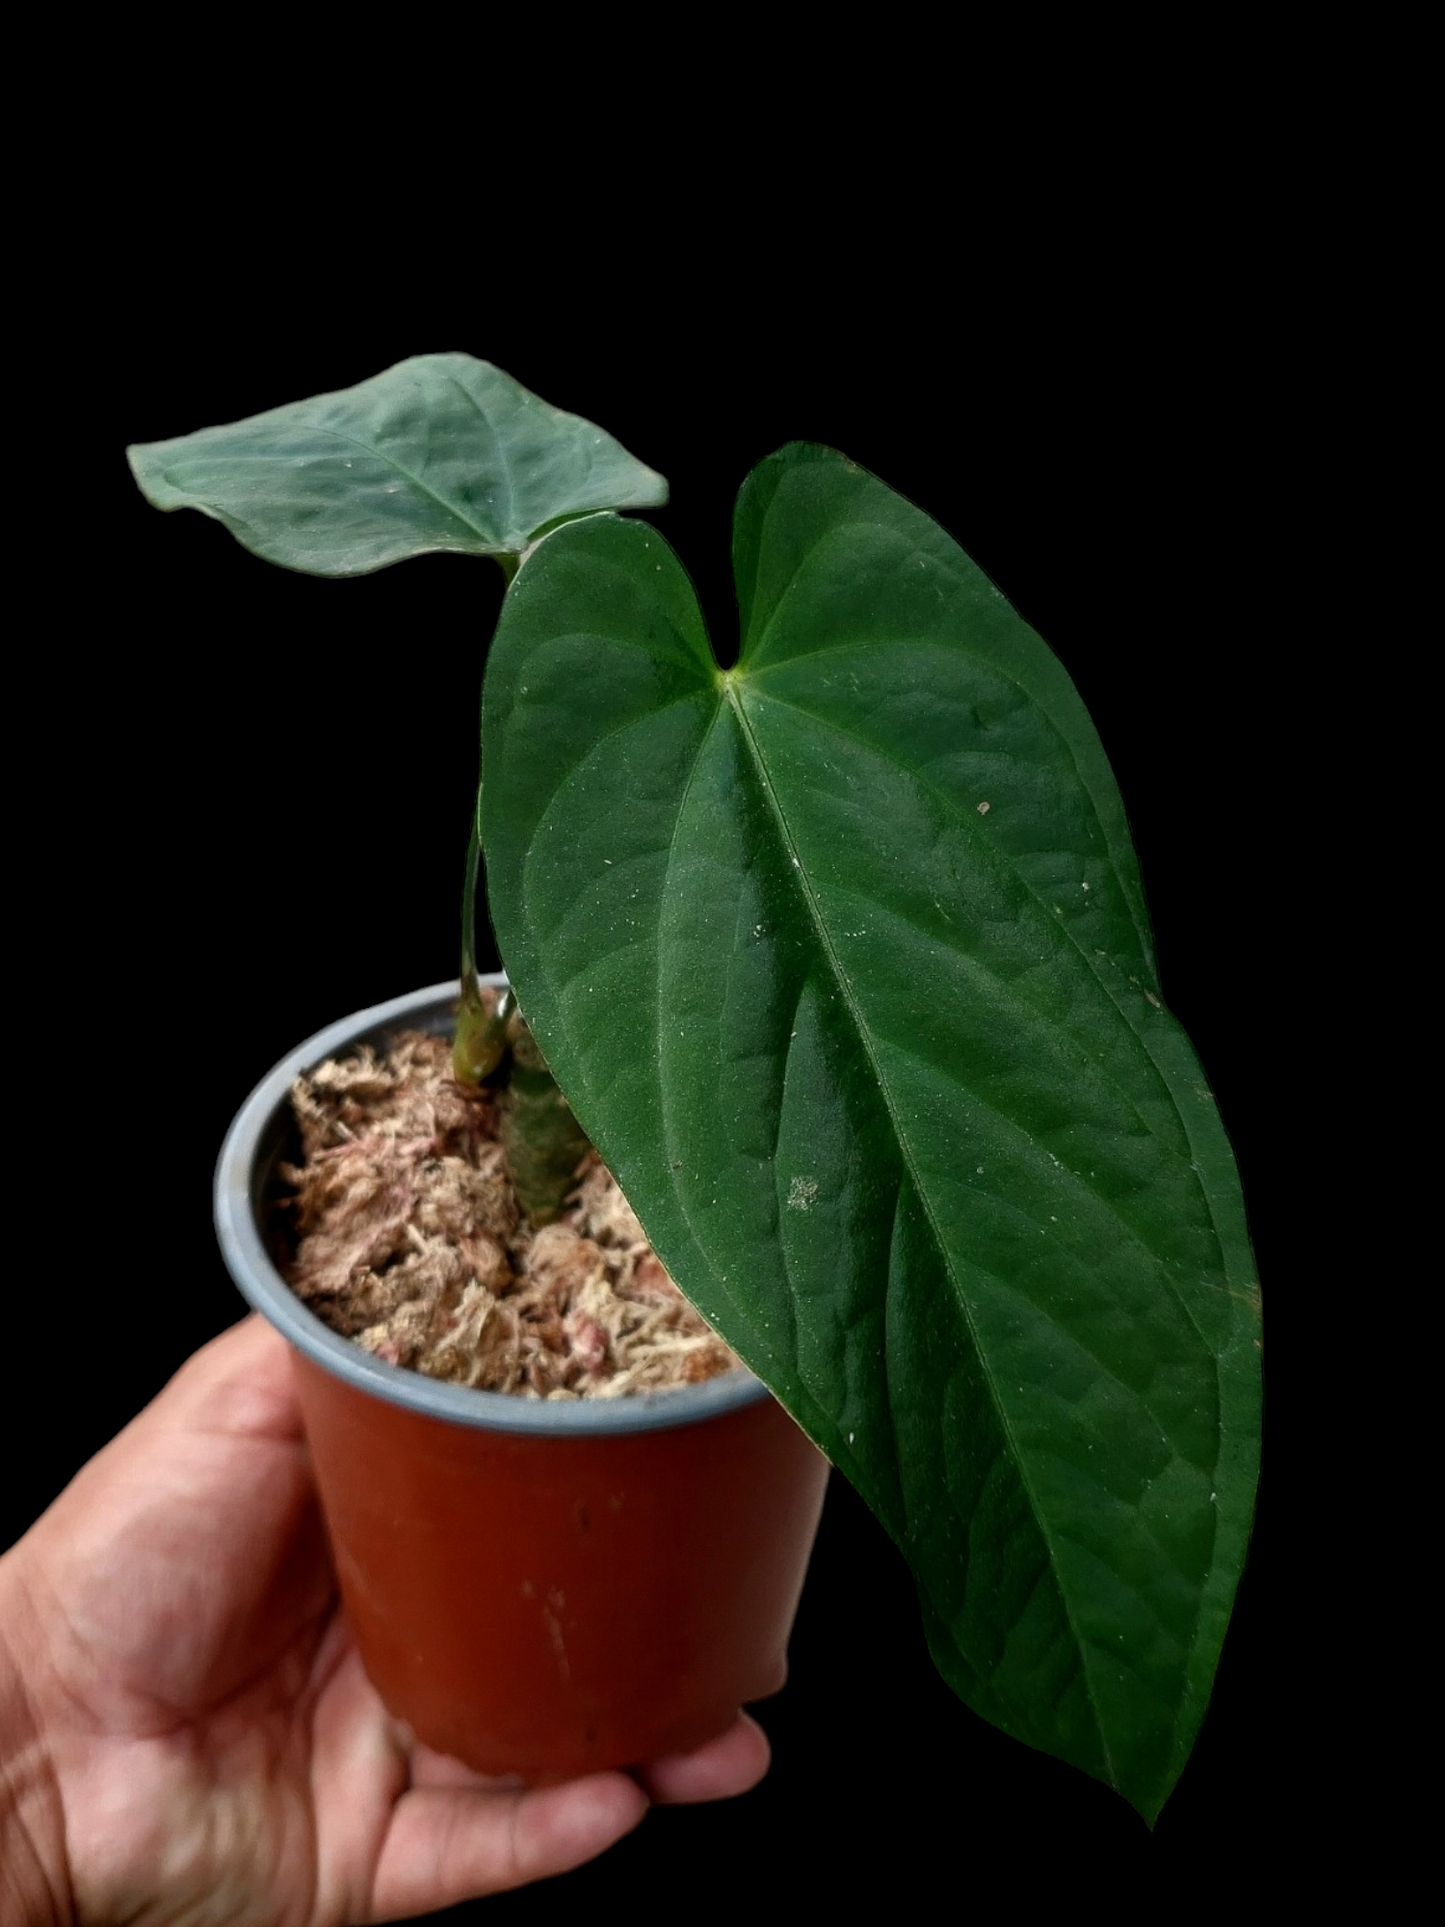 Anthurium sp. "Tarapoto Velvet" (EXACT PLANT)